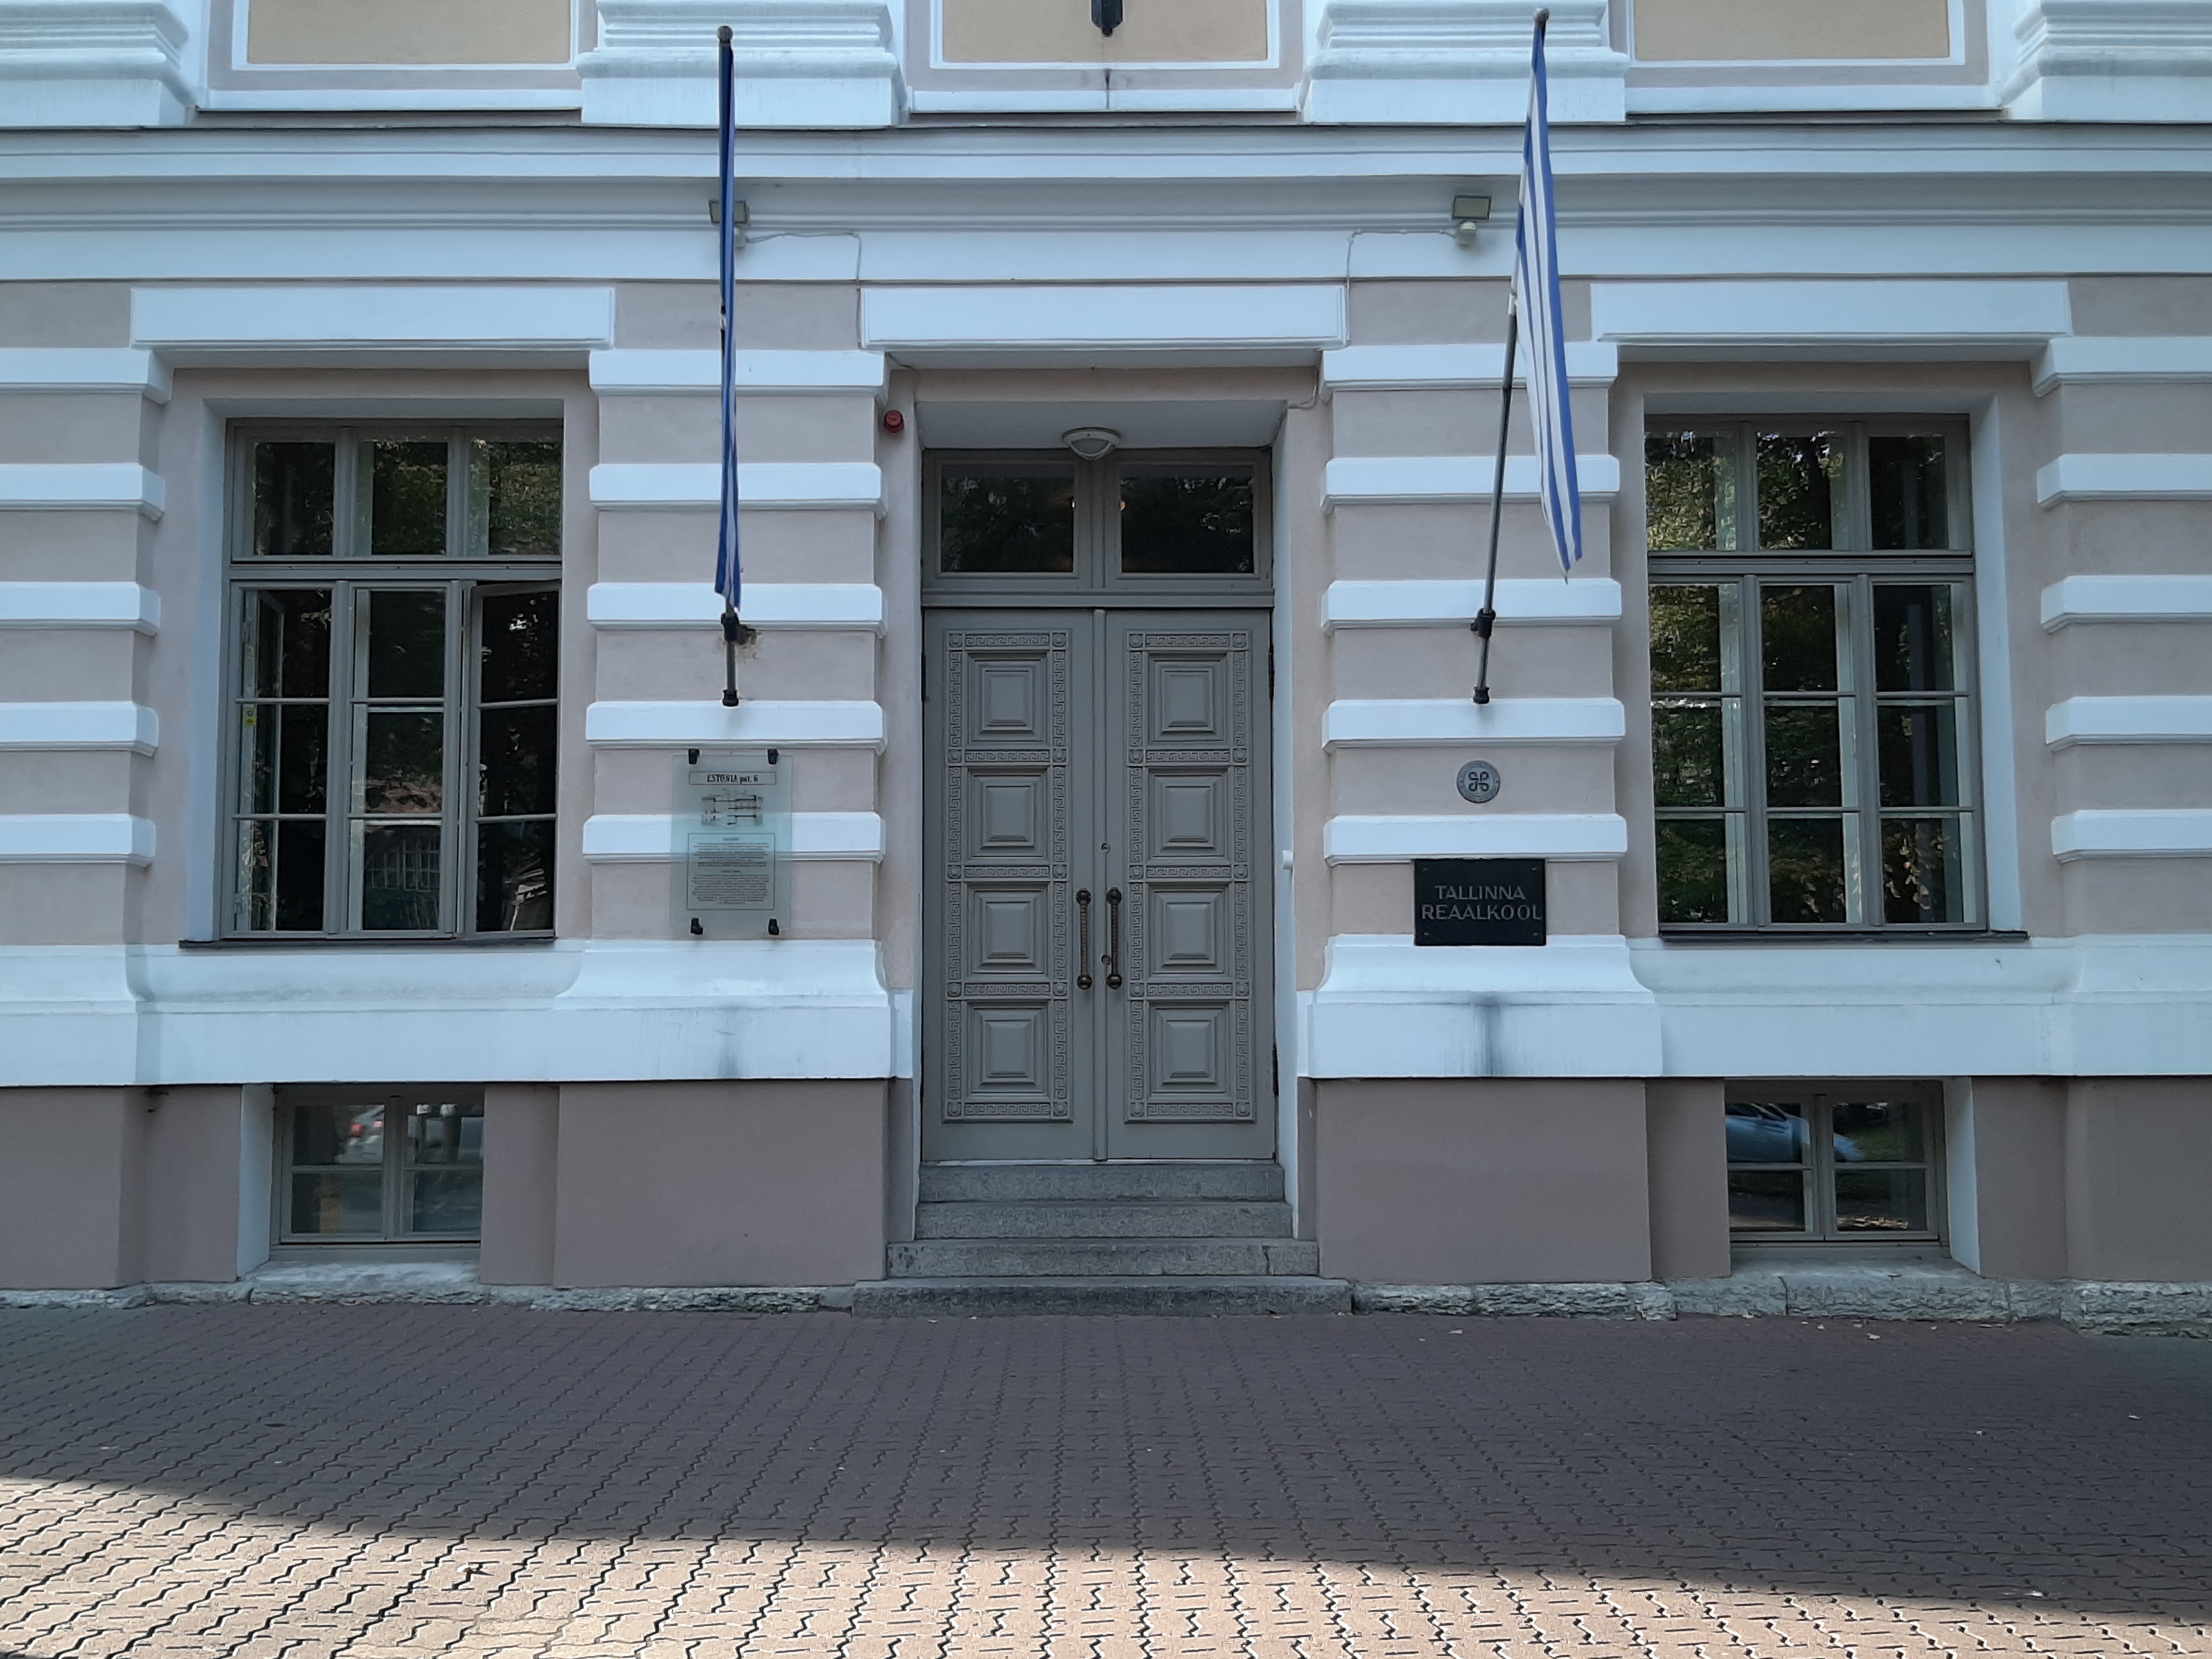 Tallinna Reaalkooli peasissekäik rephoto